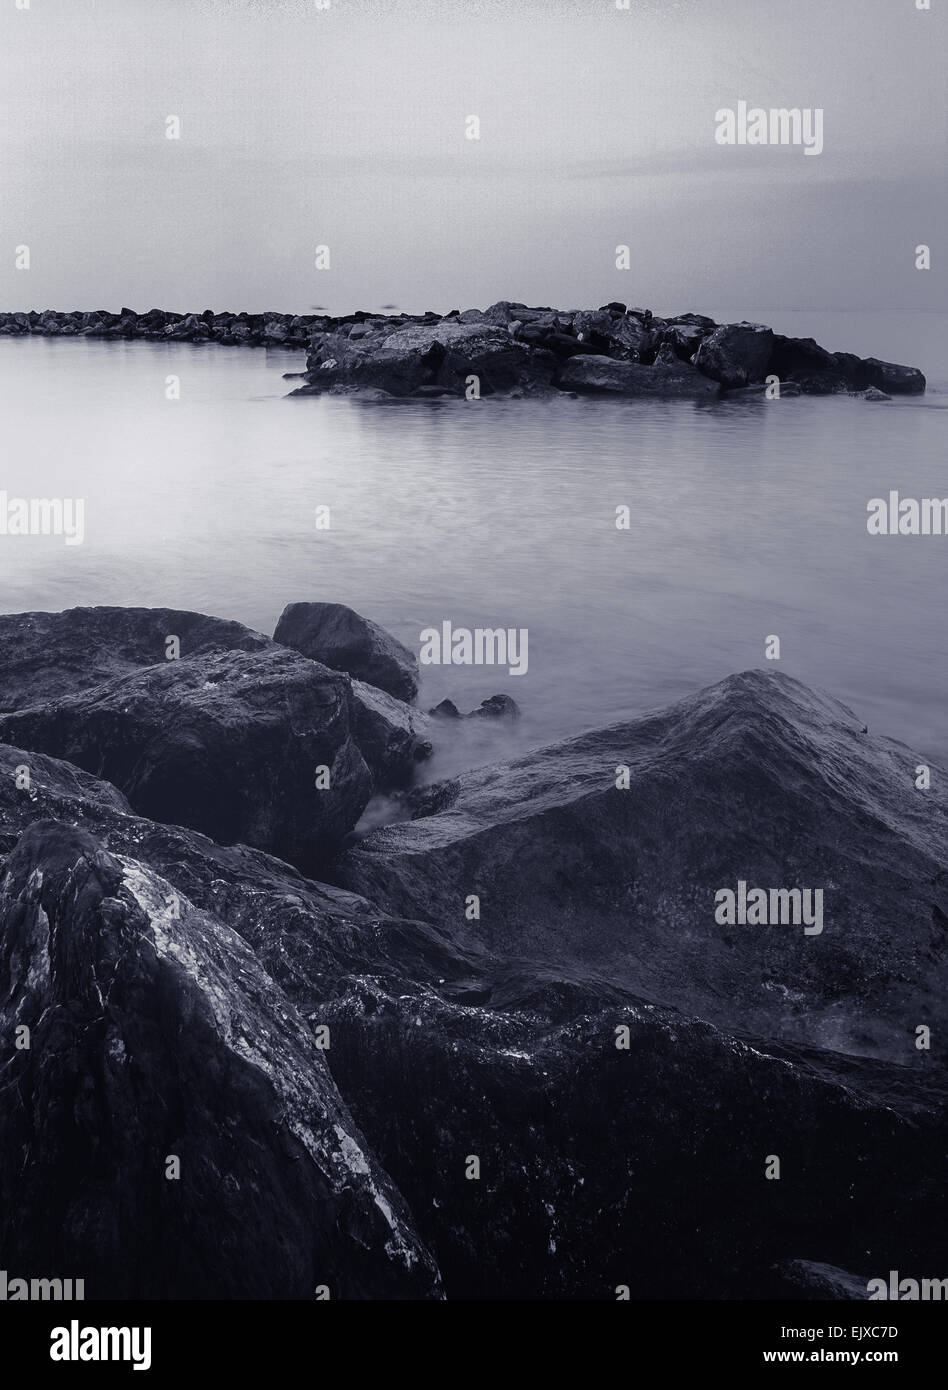 L'exposition longue verticale de format moyen avec des roches seascape monochrome à l'avant-plan et une mer calme à l'arrière-plan. Banque D'Images